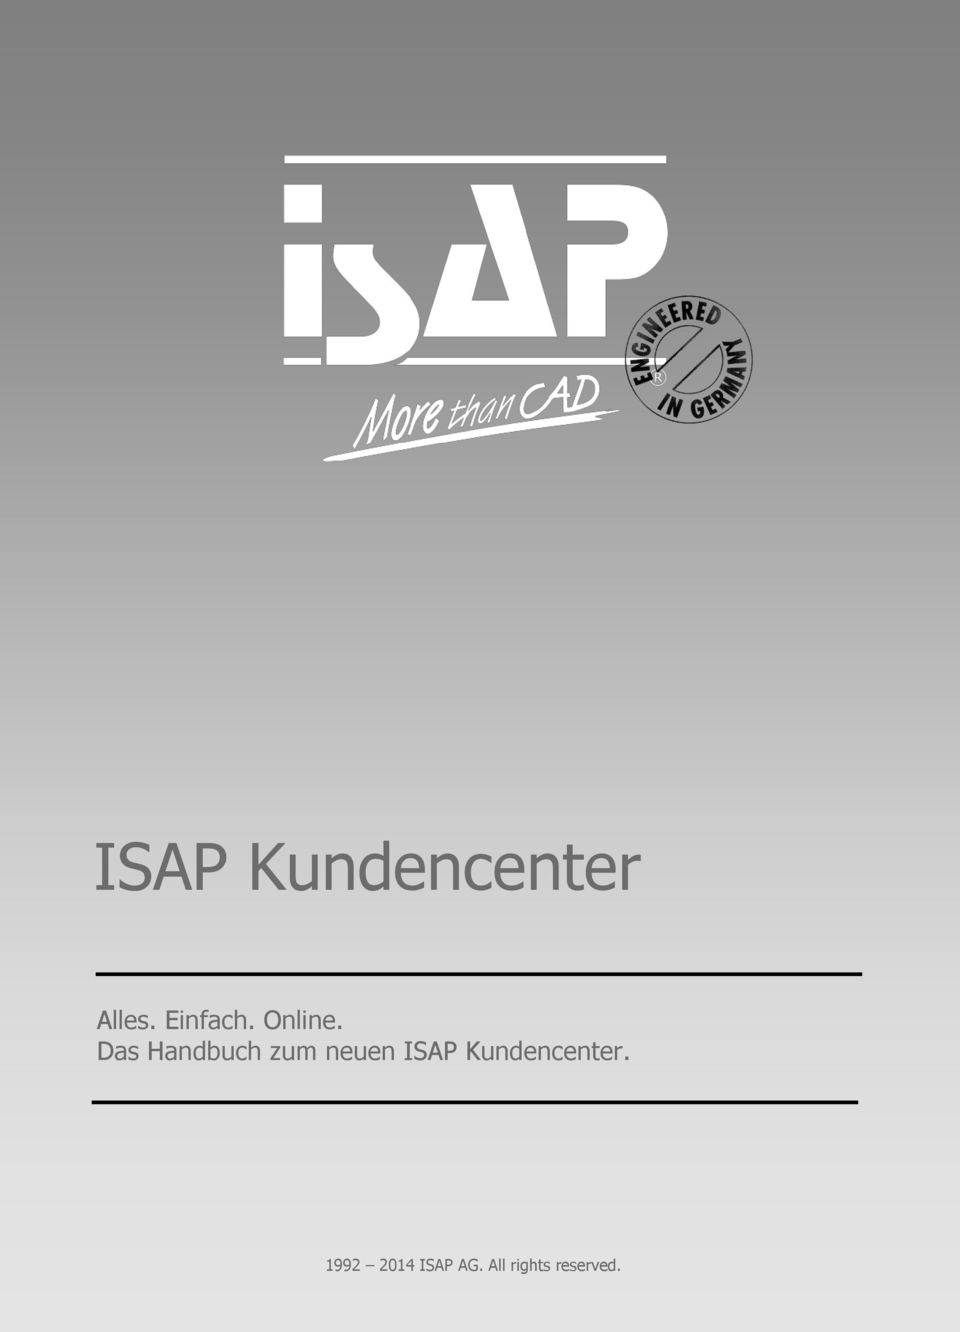 Das Handbuch zum neuen ISAP